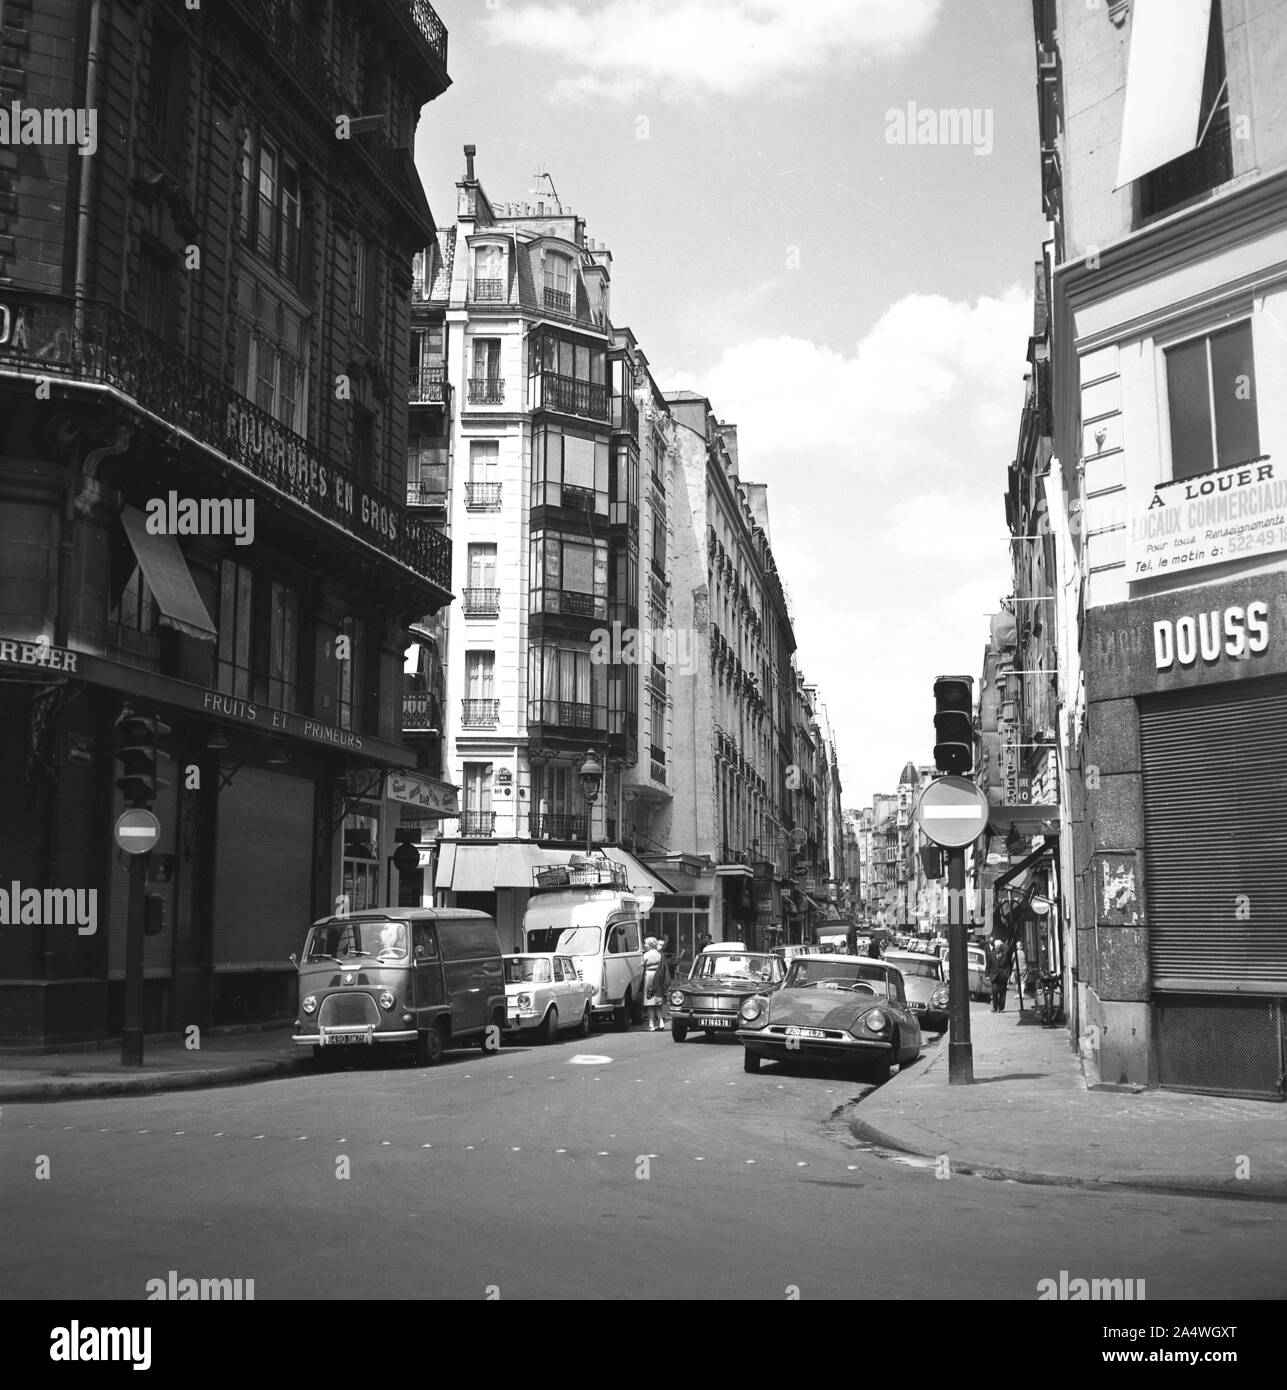 Années 1960, historique, Paris, France, petite rue avec voitures garées. Banque D'Images